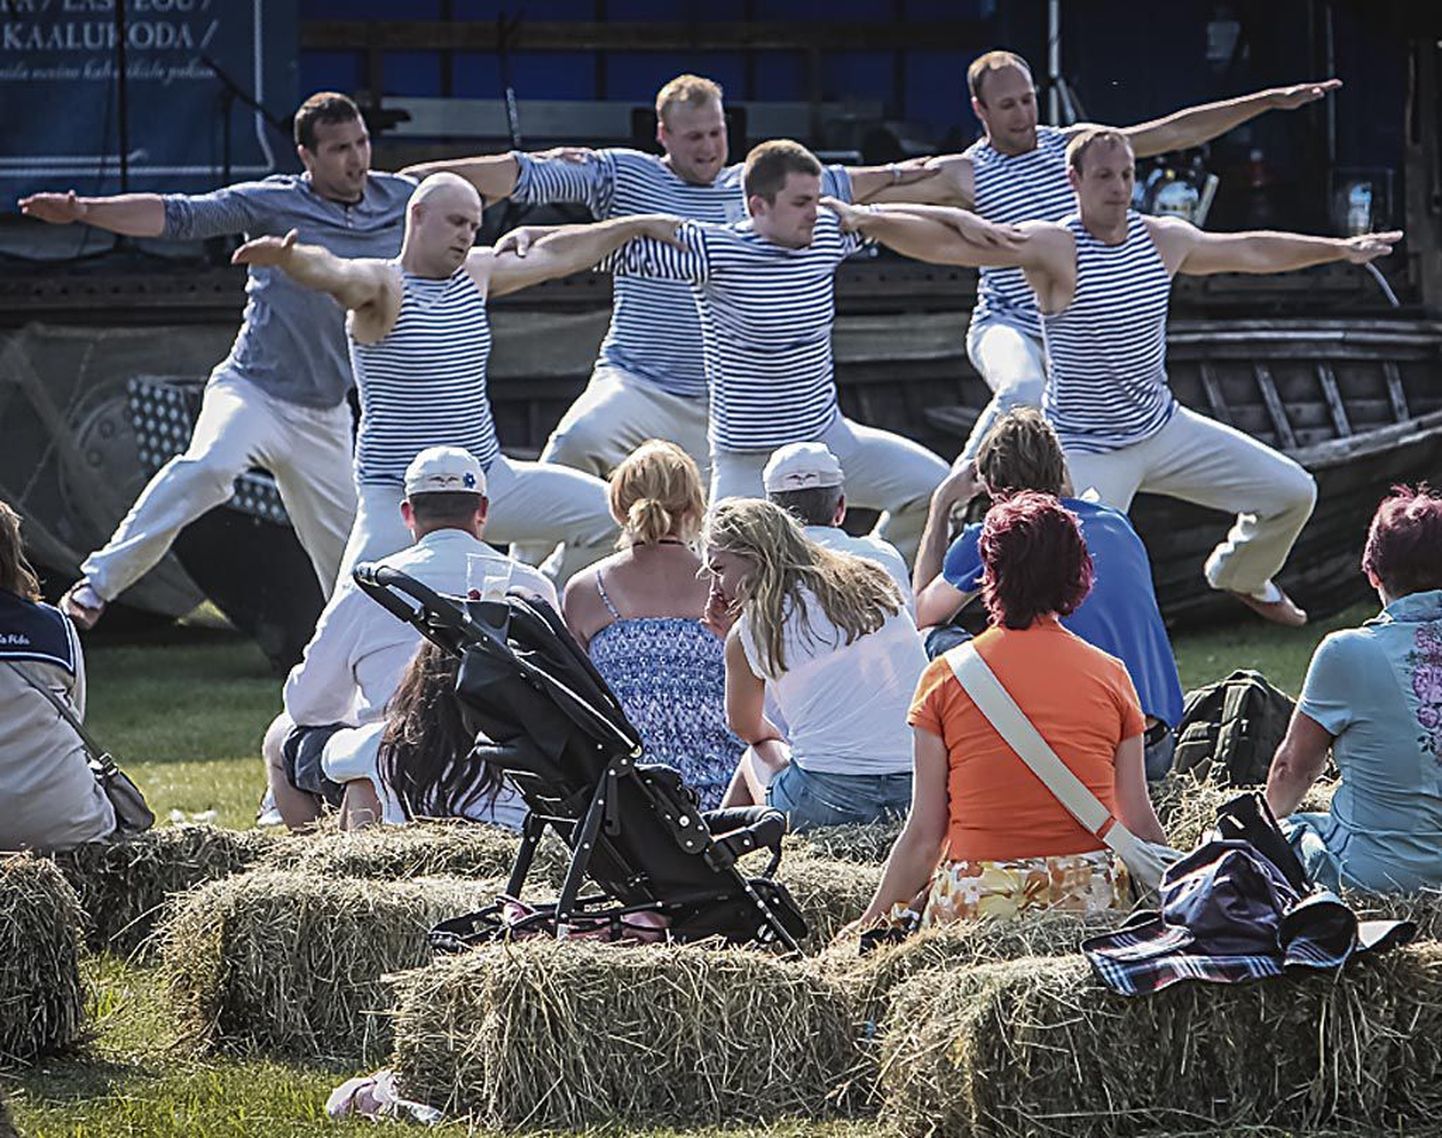 Eesti esimesel kogukonnafestivalil “Meie küla peol” sai nii meelt lahutada kui kõhu täis.